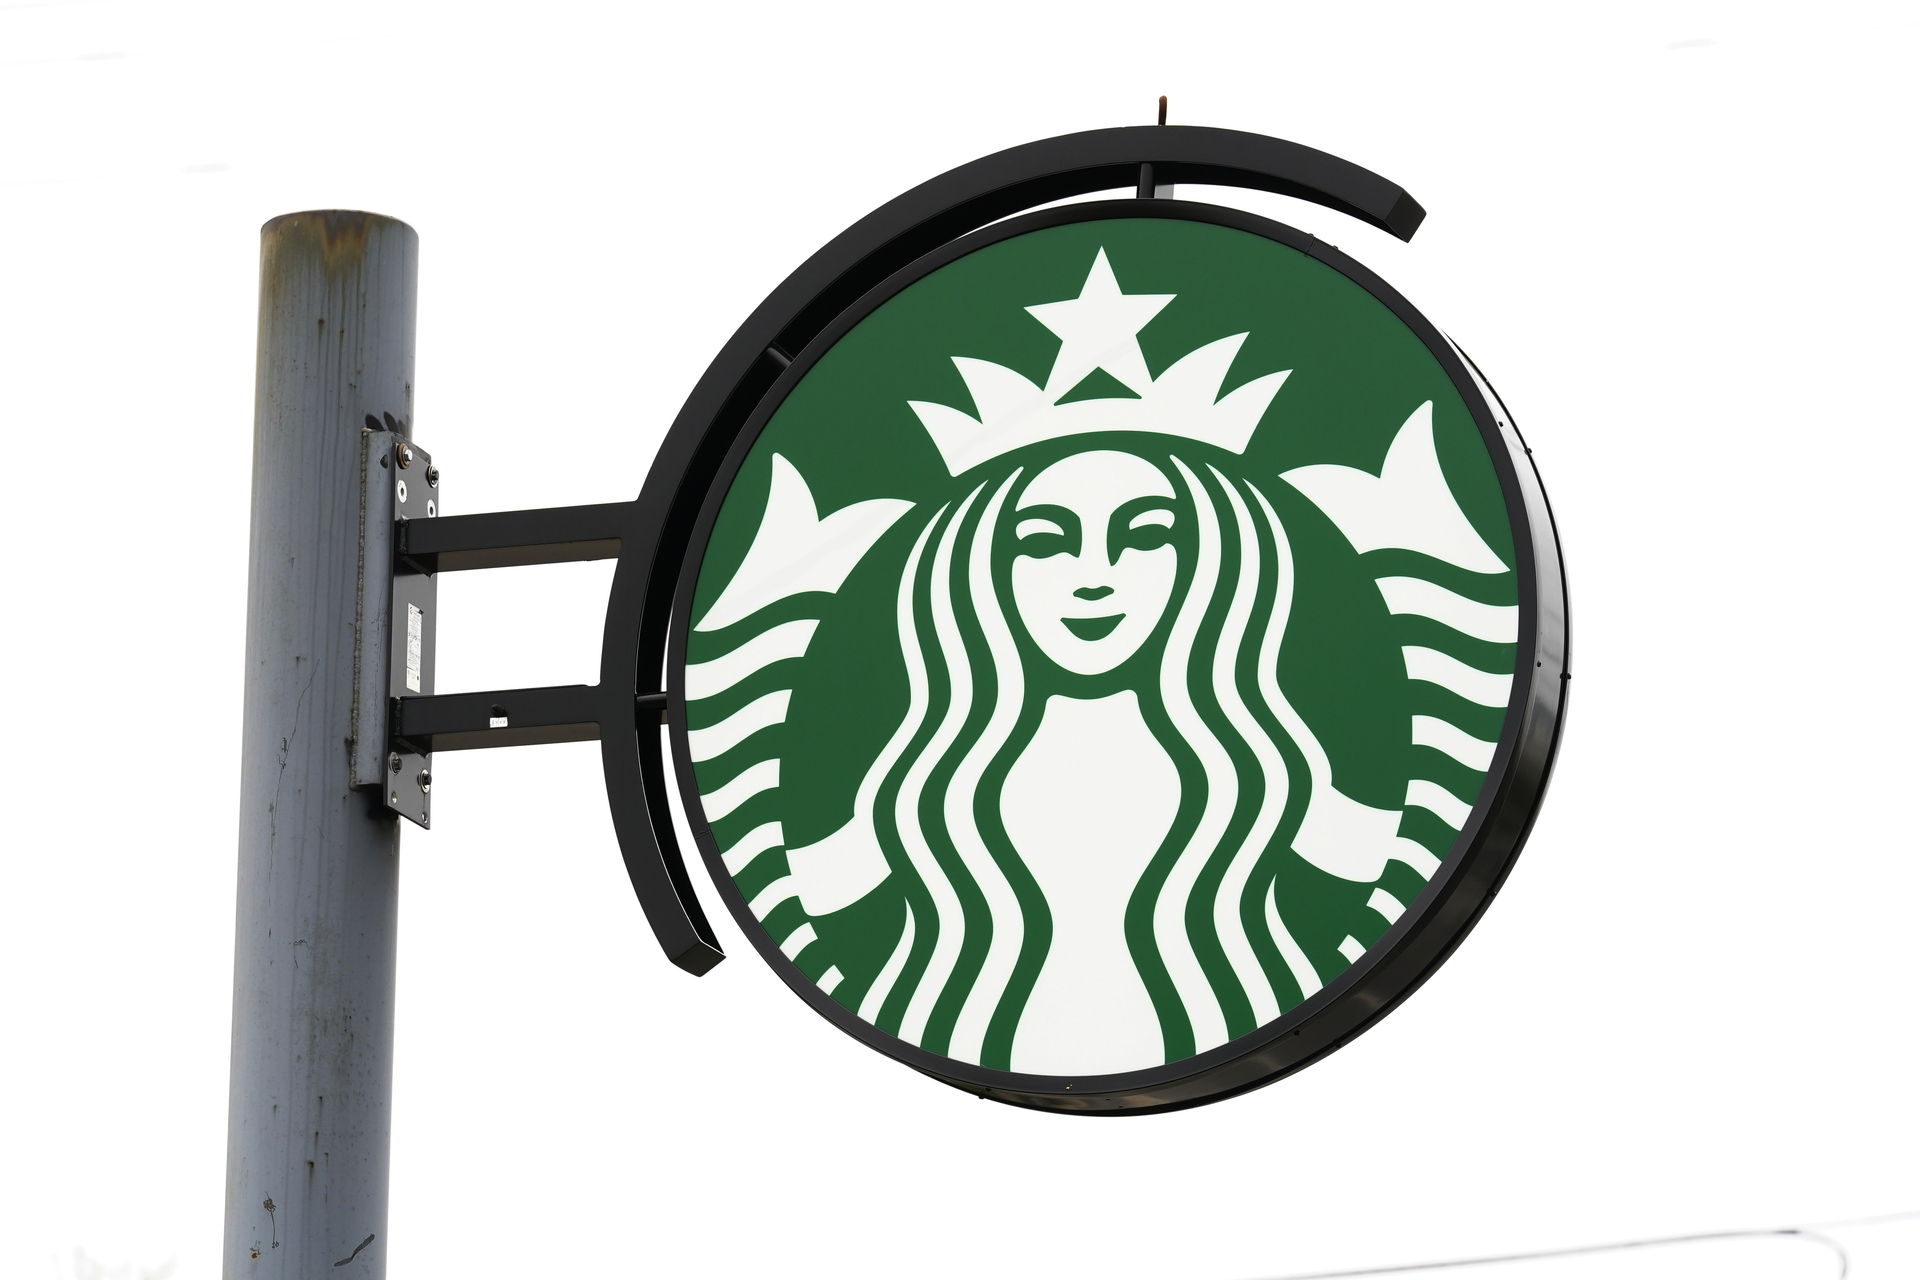 Starbucks despide a empleados tras boicot por apoyar a Israel en ofensiva contra Gaza